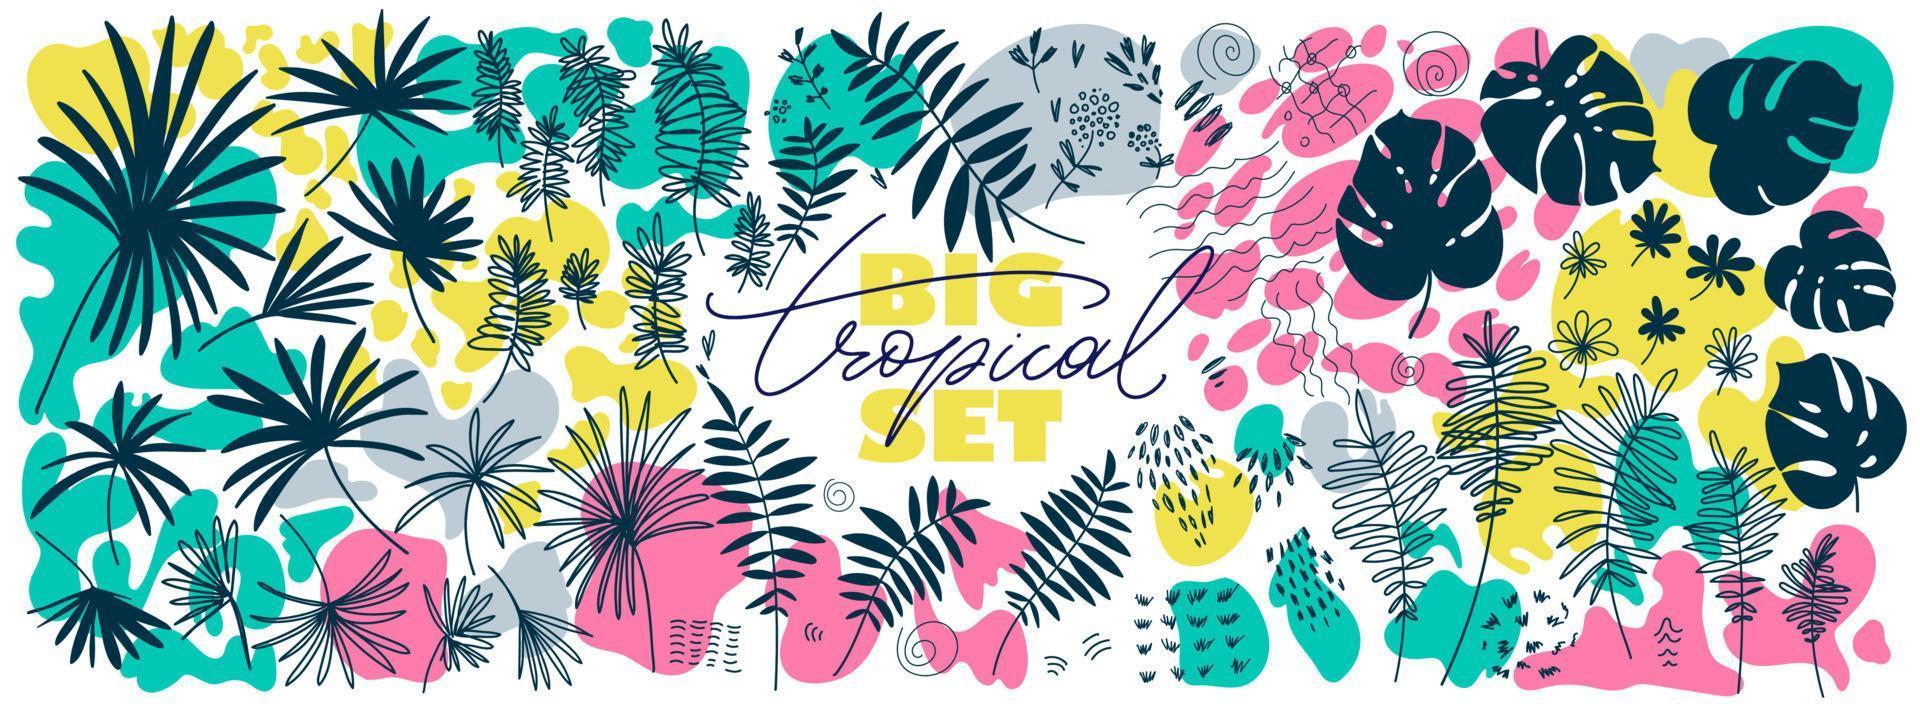 elementos florales tropicales dibujados a mano plana. conjunto de formas orgánicas modernas, trazos y hojas de palma de color brillante. vector